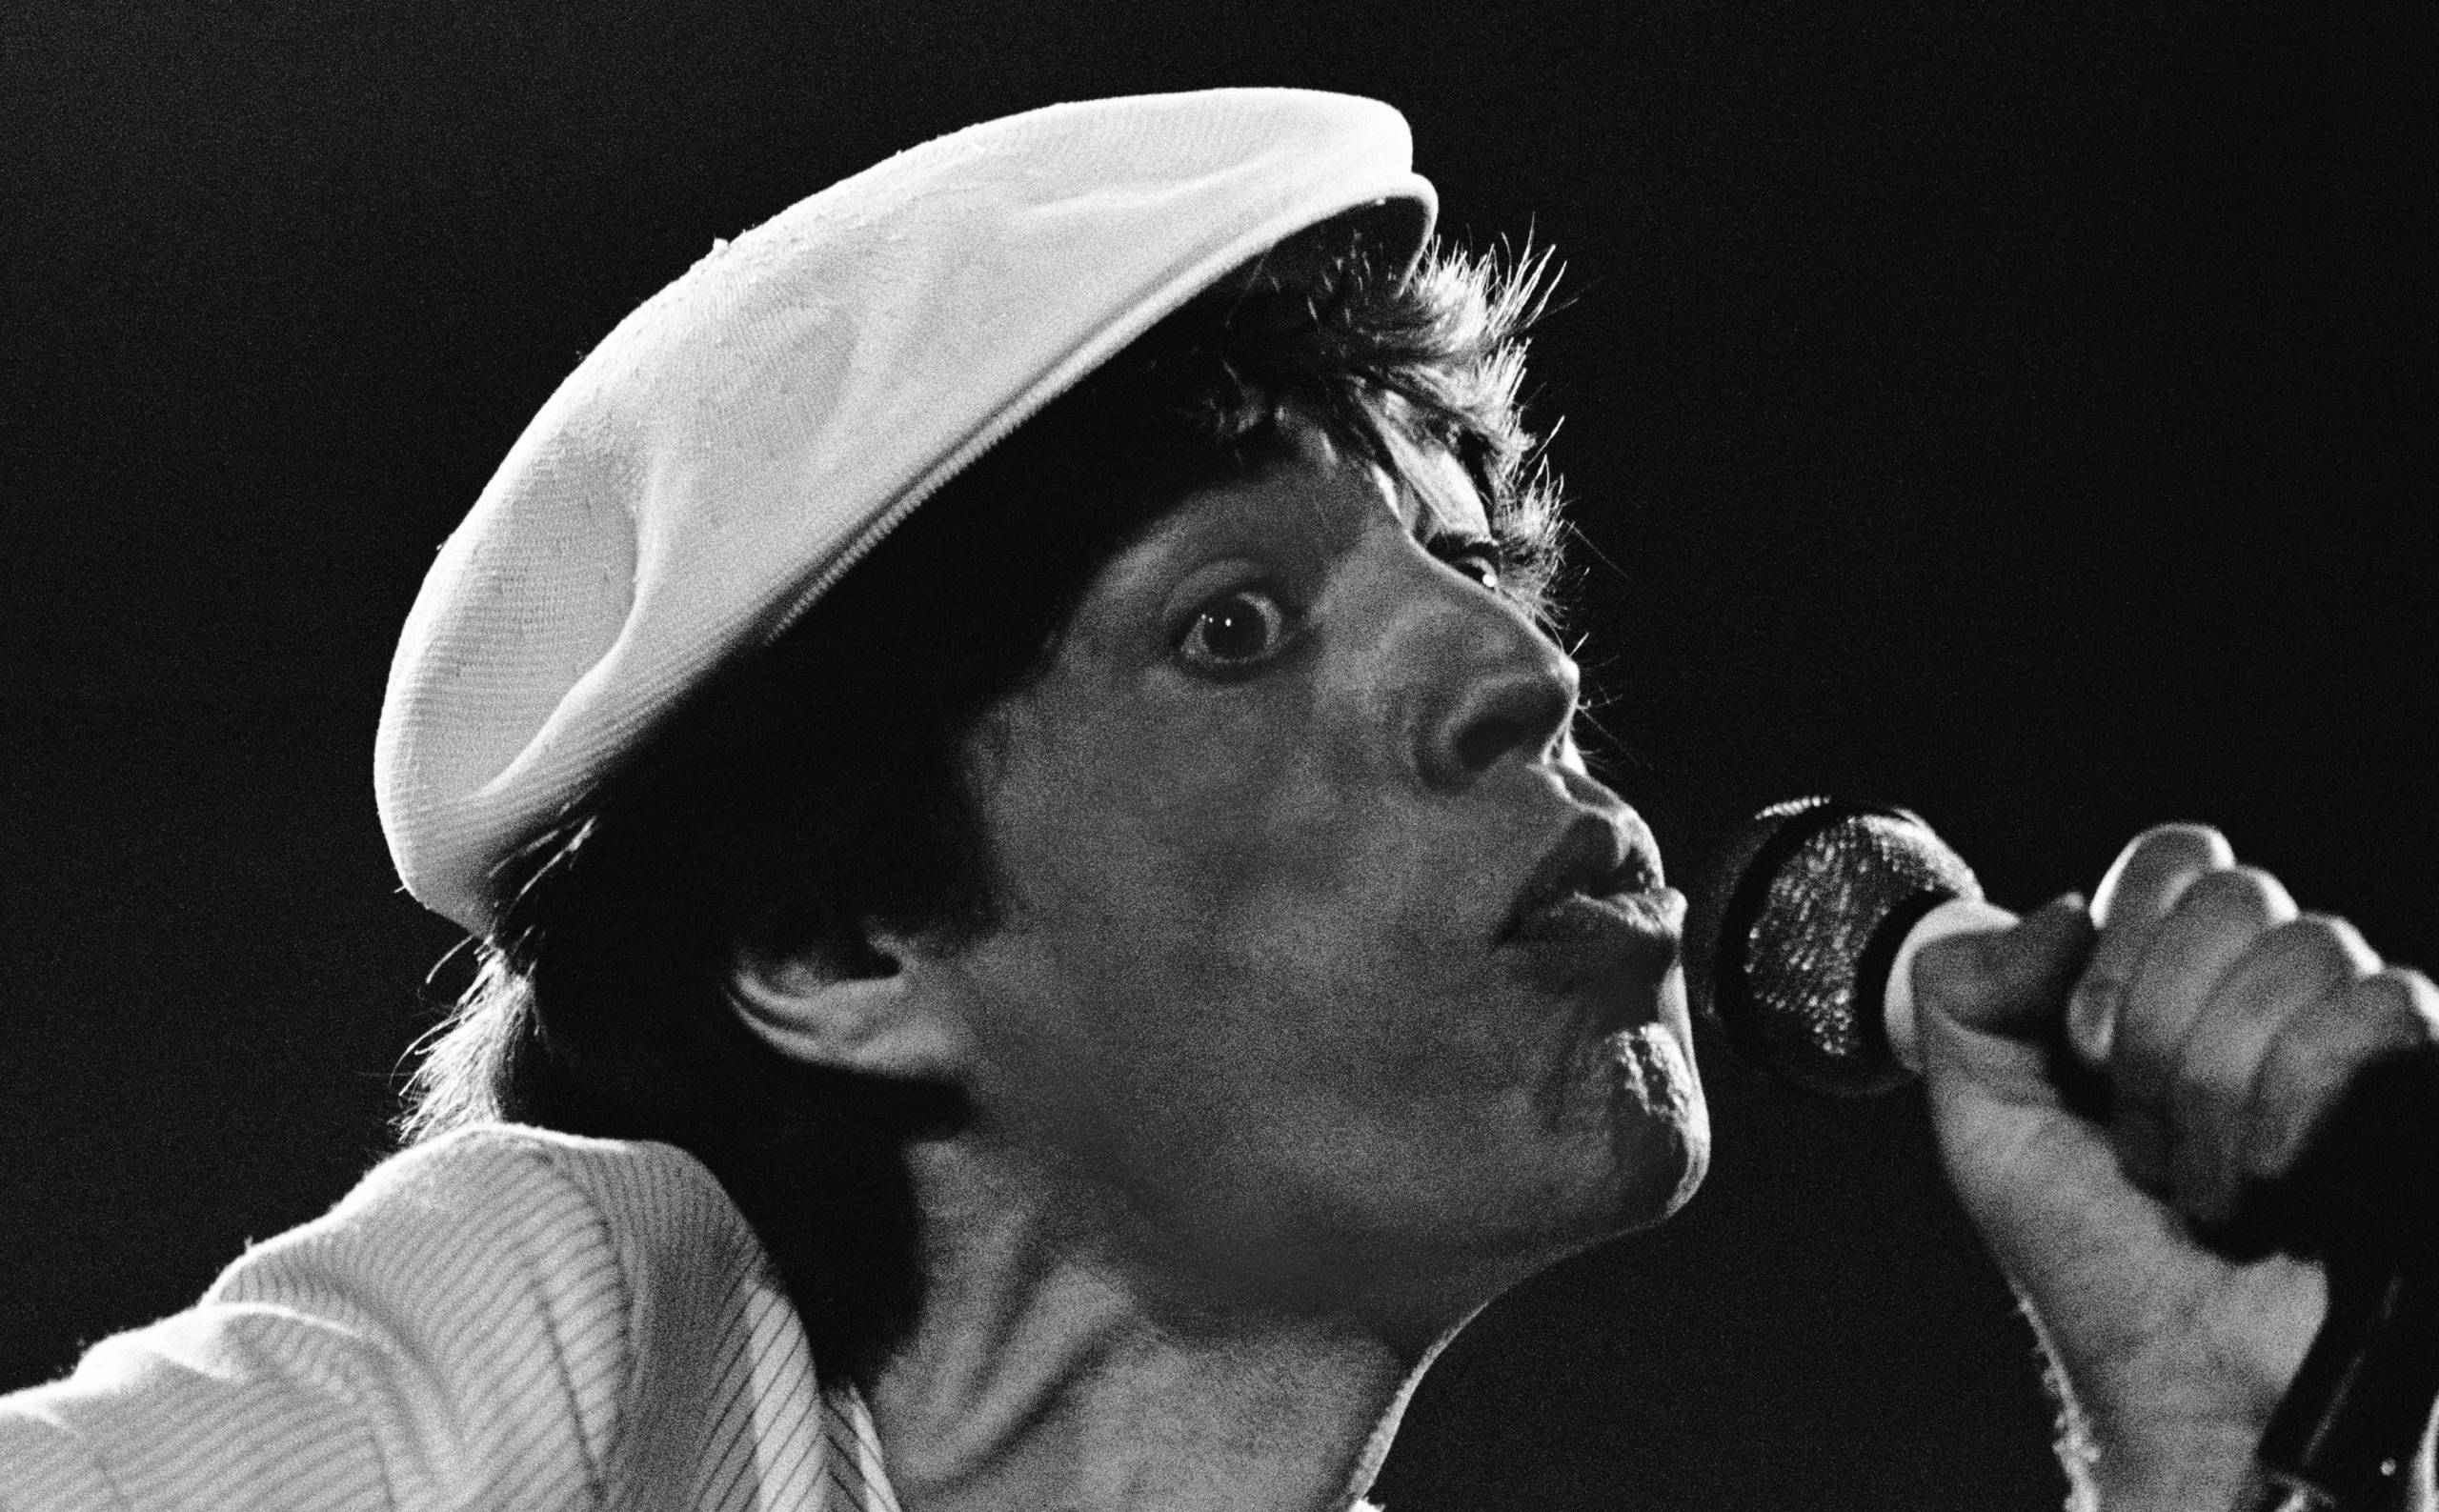 Mick Jagger von den Rolling Stones